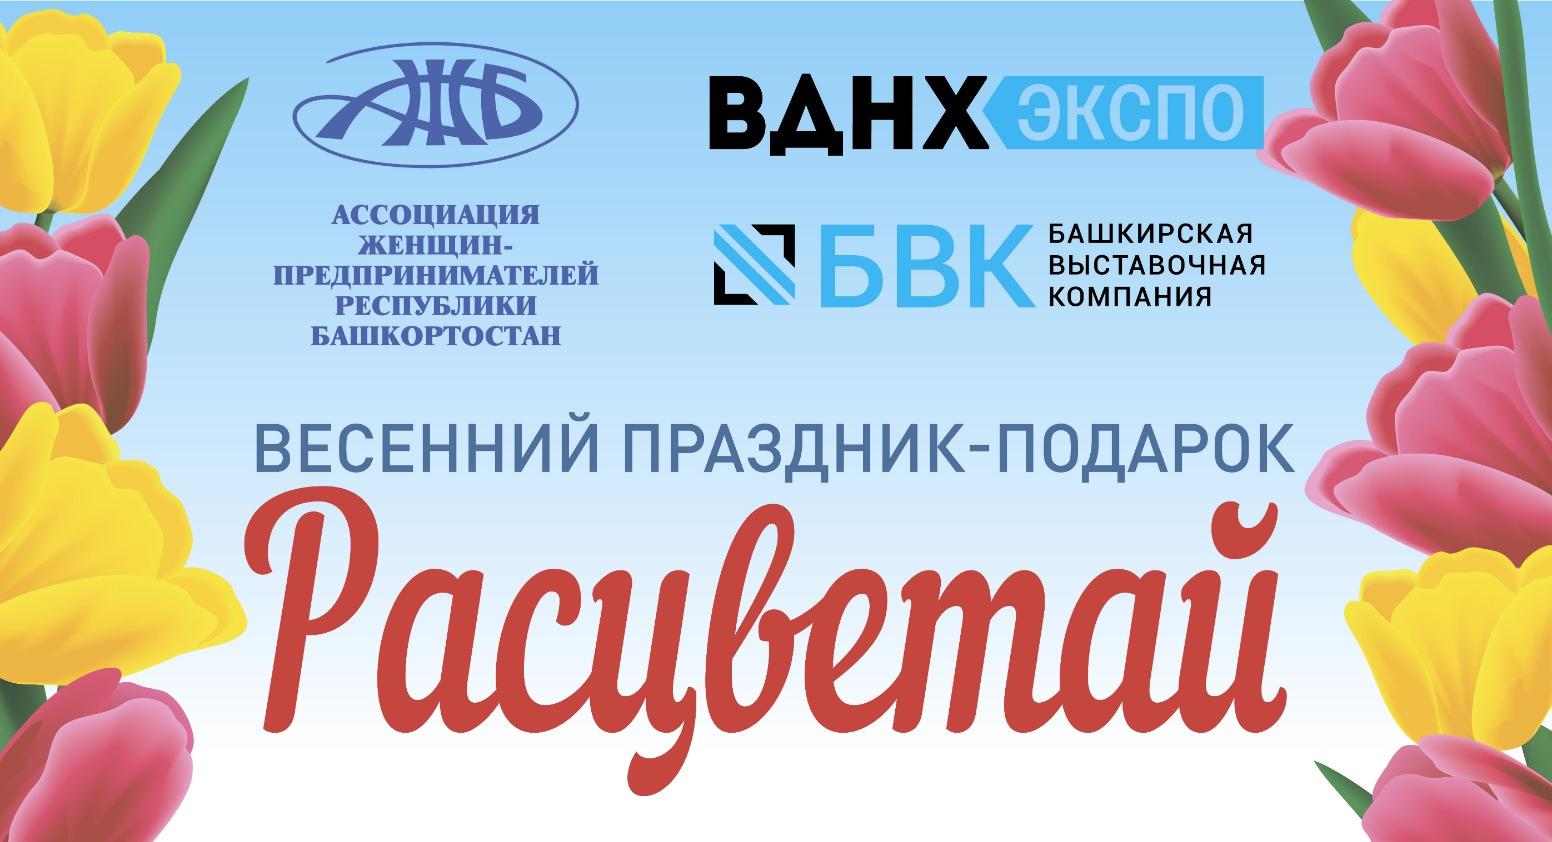 Жительниц Башкирии приглашают на бесплатный фестиваль для женщин